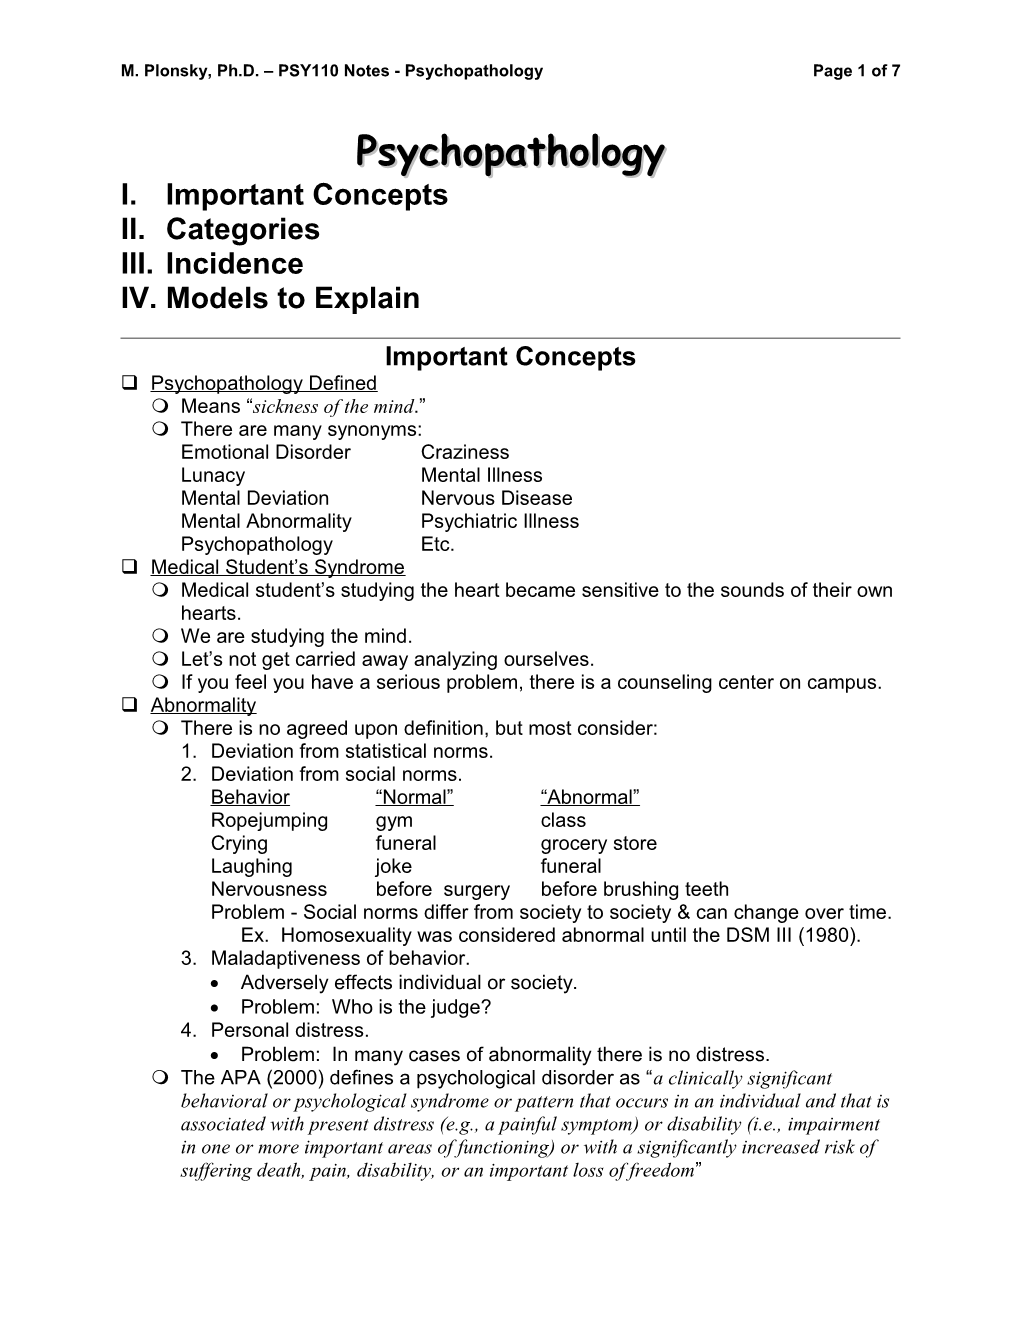 M. Plonsky, Ph.D. PSY110 Notes - Psychopathologypage 1 of 7